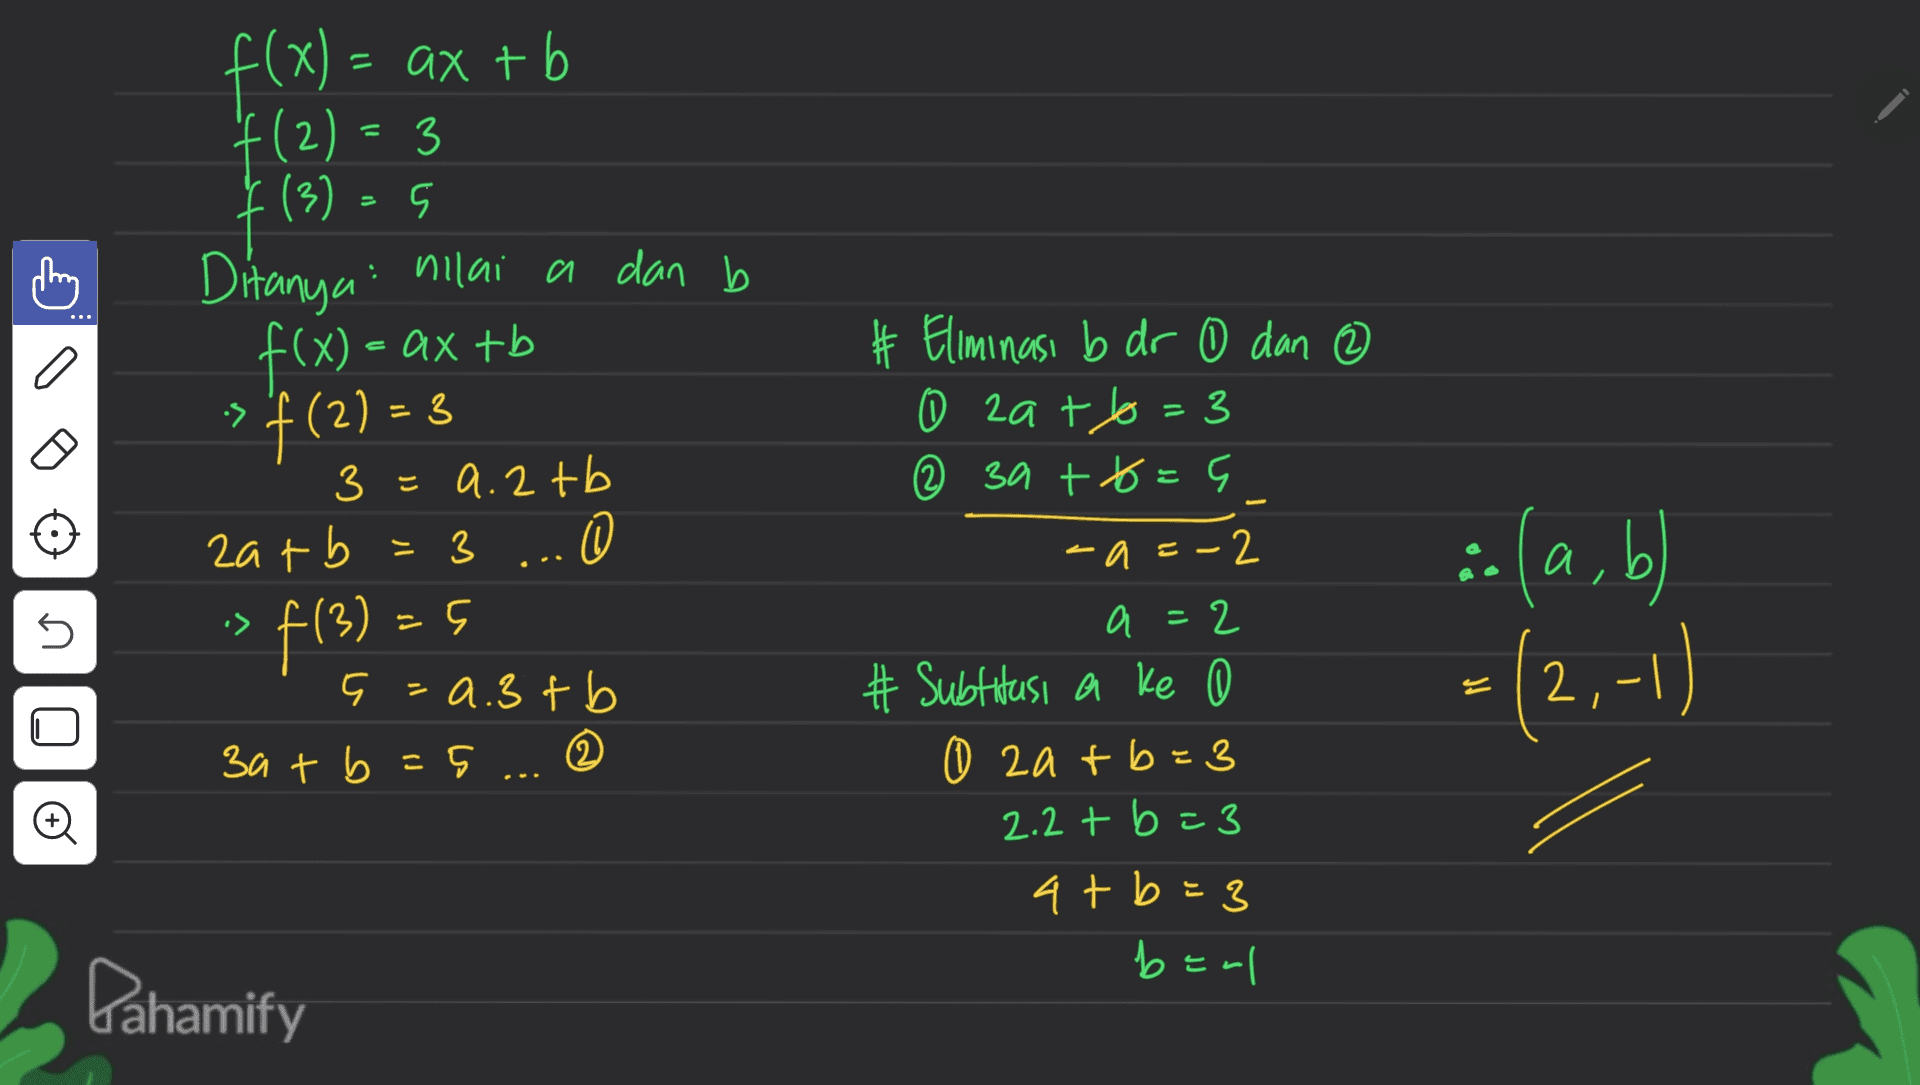 . f(x) = ax tb a # f(x) = ax + b f(2)= 3 3 f(3) = 5 ( s Ditanya nilai a dan b x s f(2) = 3 3 3=9.2 tb 3 zatb = 3 ... 3 0 5 5 =a.3t b 3a + b =5 ... } Eliminasi b dr 0 dan ② 0 zato=3 3 @ 3a +t=9 -=-2 اطره) .: a = 5 -> f(3) = 5 a, b =(2,-1) = . a 2 # Subtitusi a ke 0 o zatb=3 2.2t b=3 at b=3 ben Đ Pahamify 